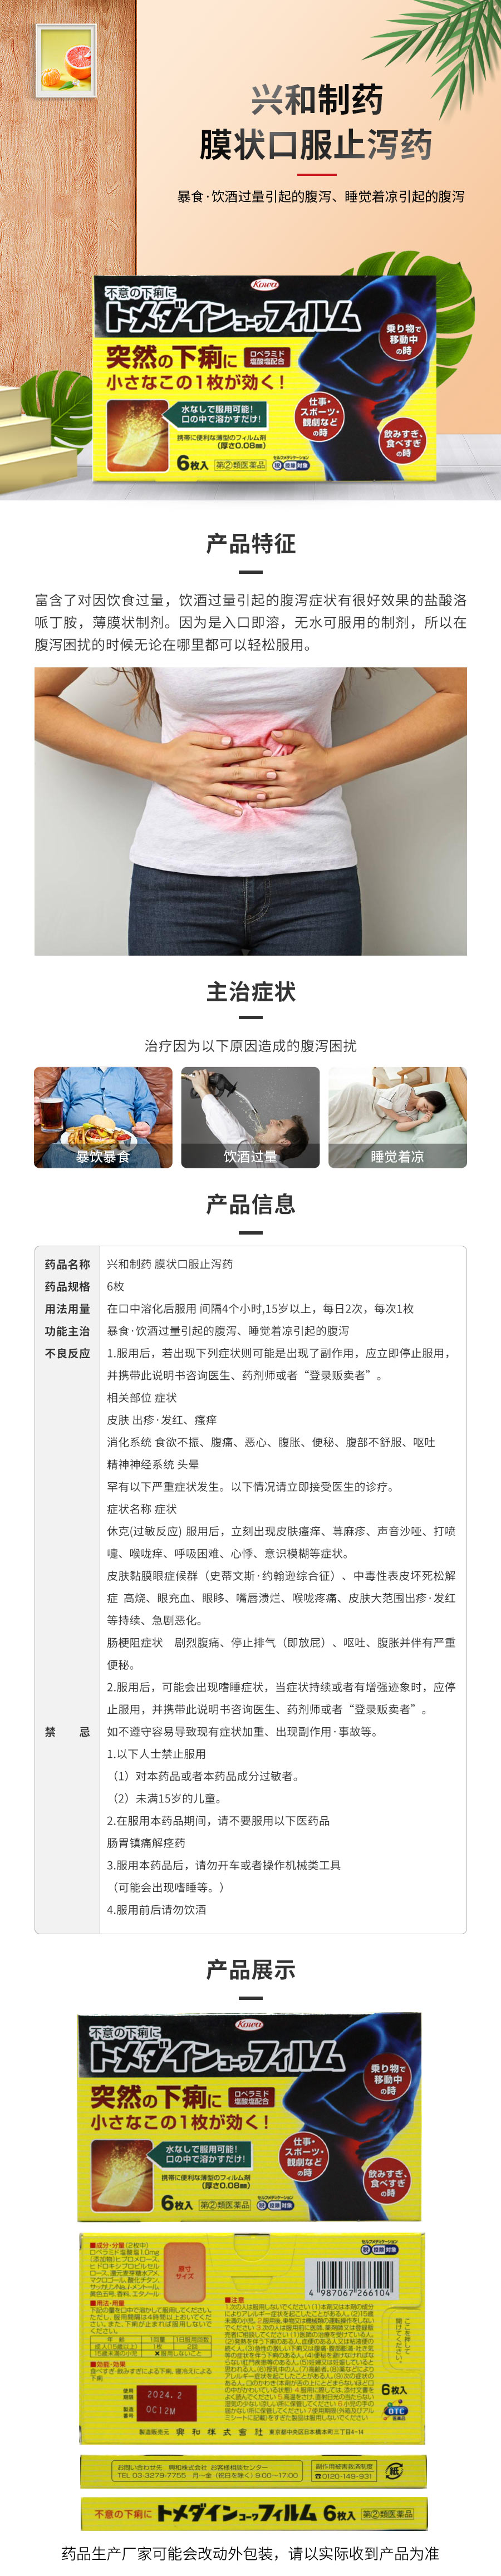 兴和制药膜状口服止泻药6枚-香港木子国际药品信息网